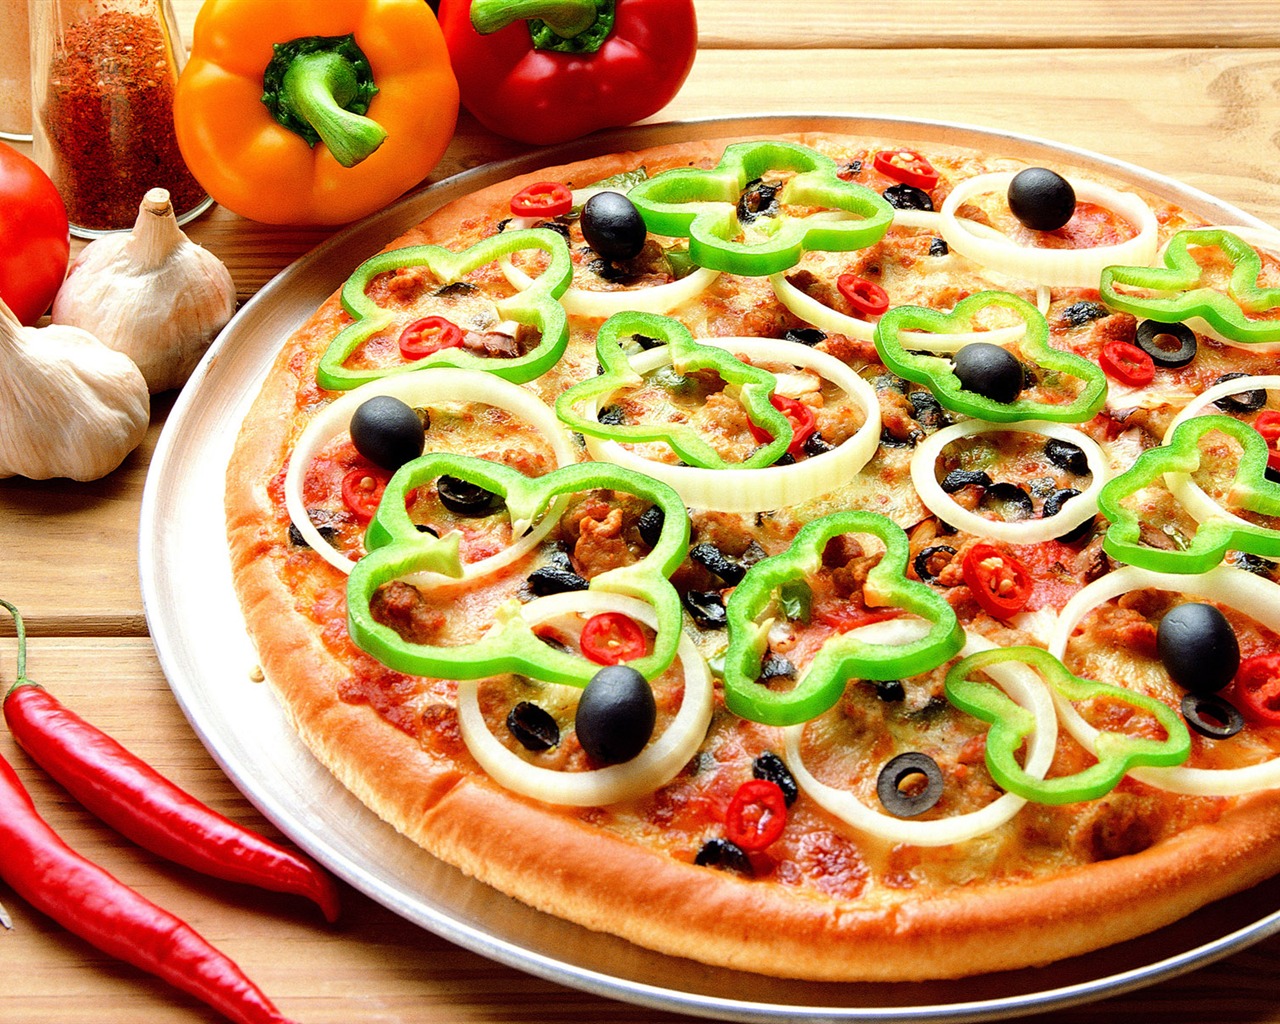 Fondos de pizzerías de Alimentos (3) #1 - 1280x1024